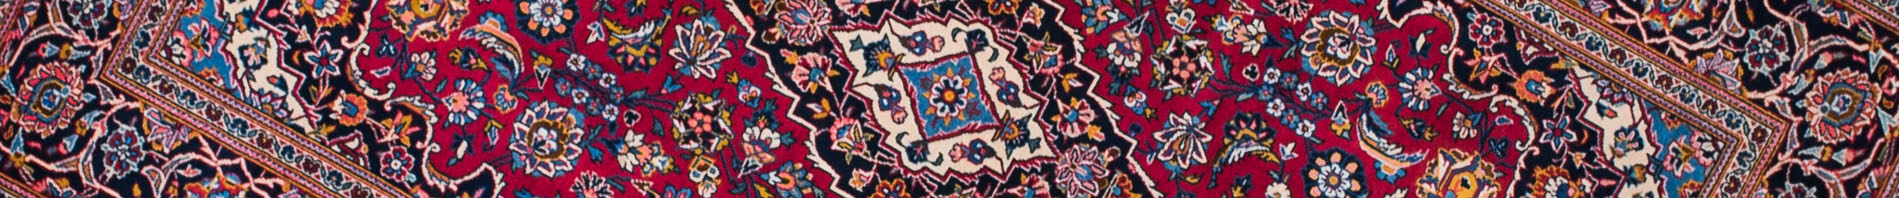 Kashan Persian Carpet Rug N1Carpet Canada Montreal Tapis Persan 1890